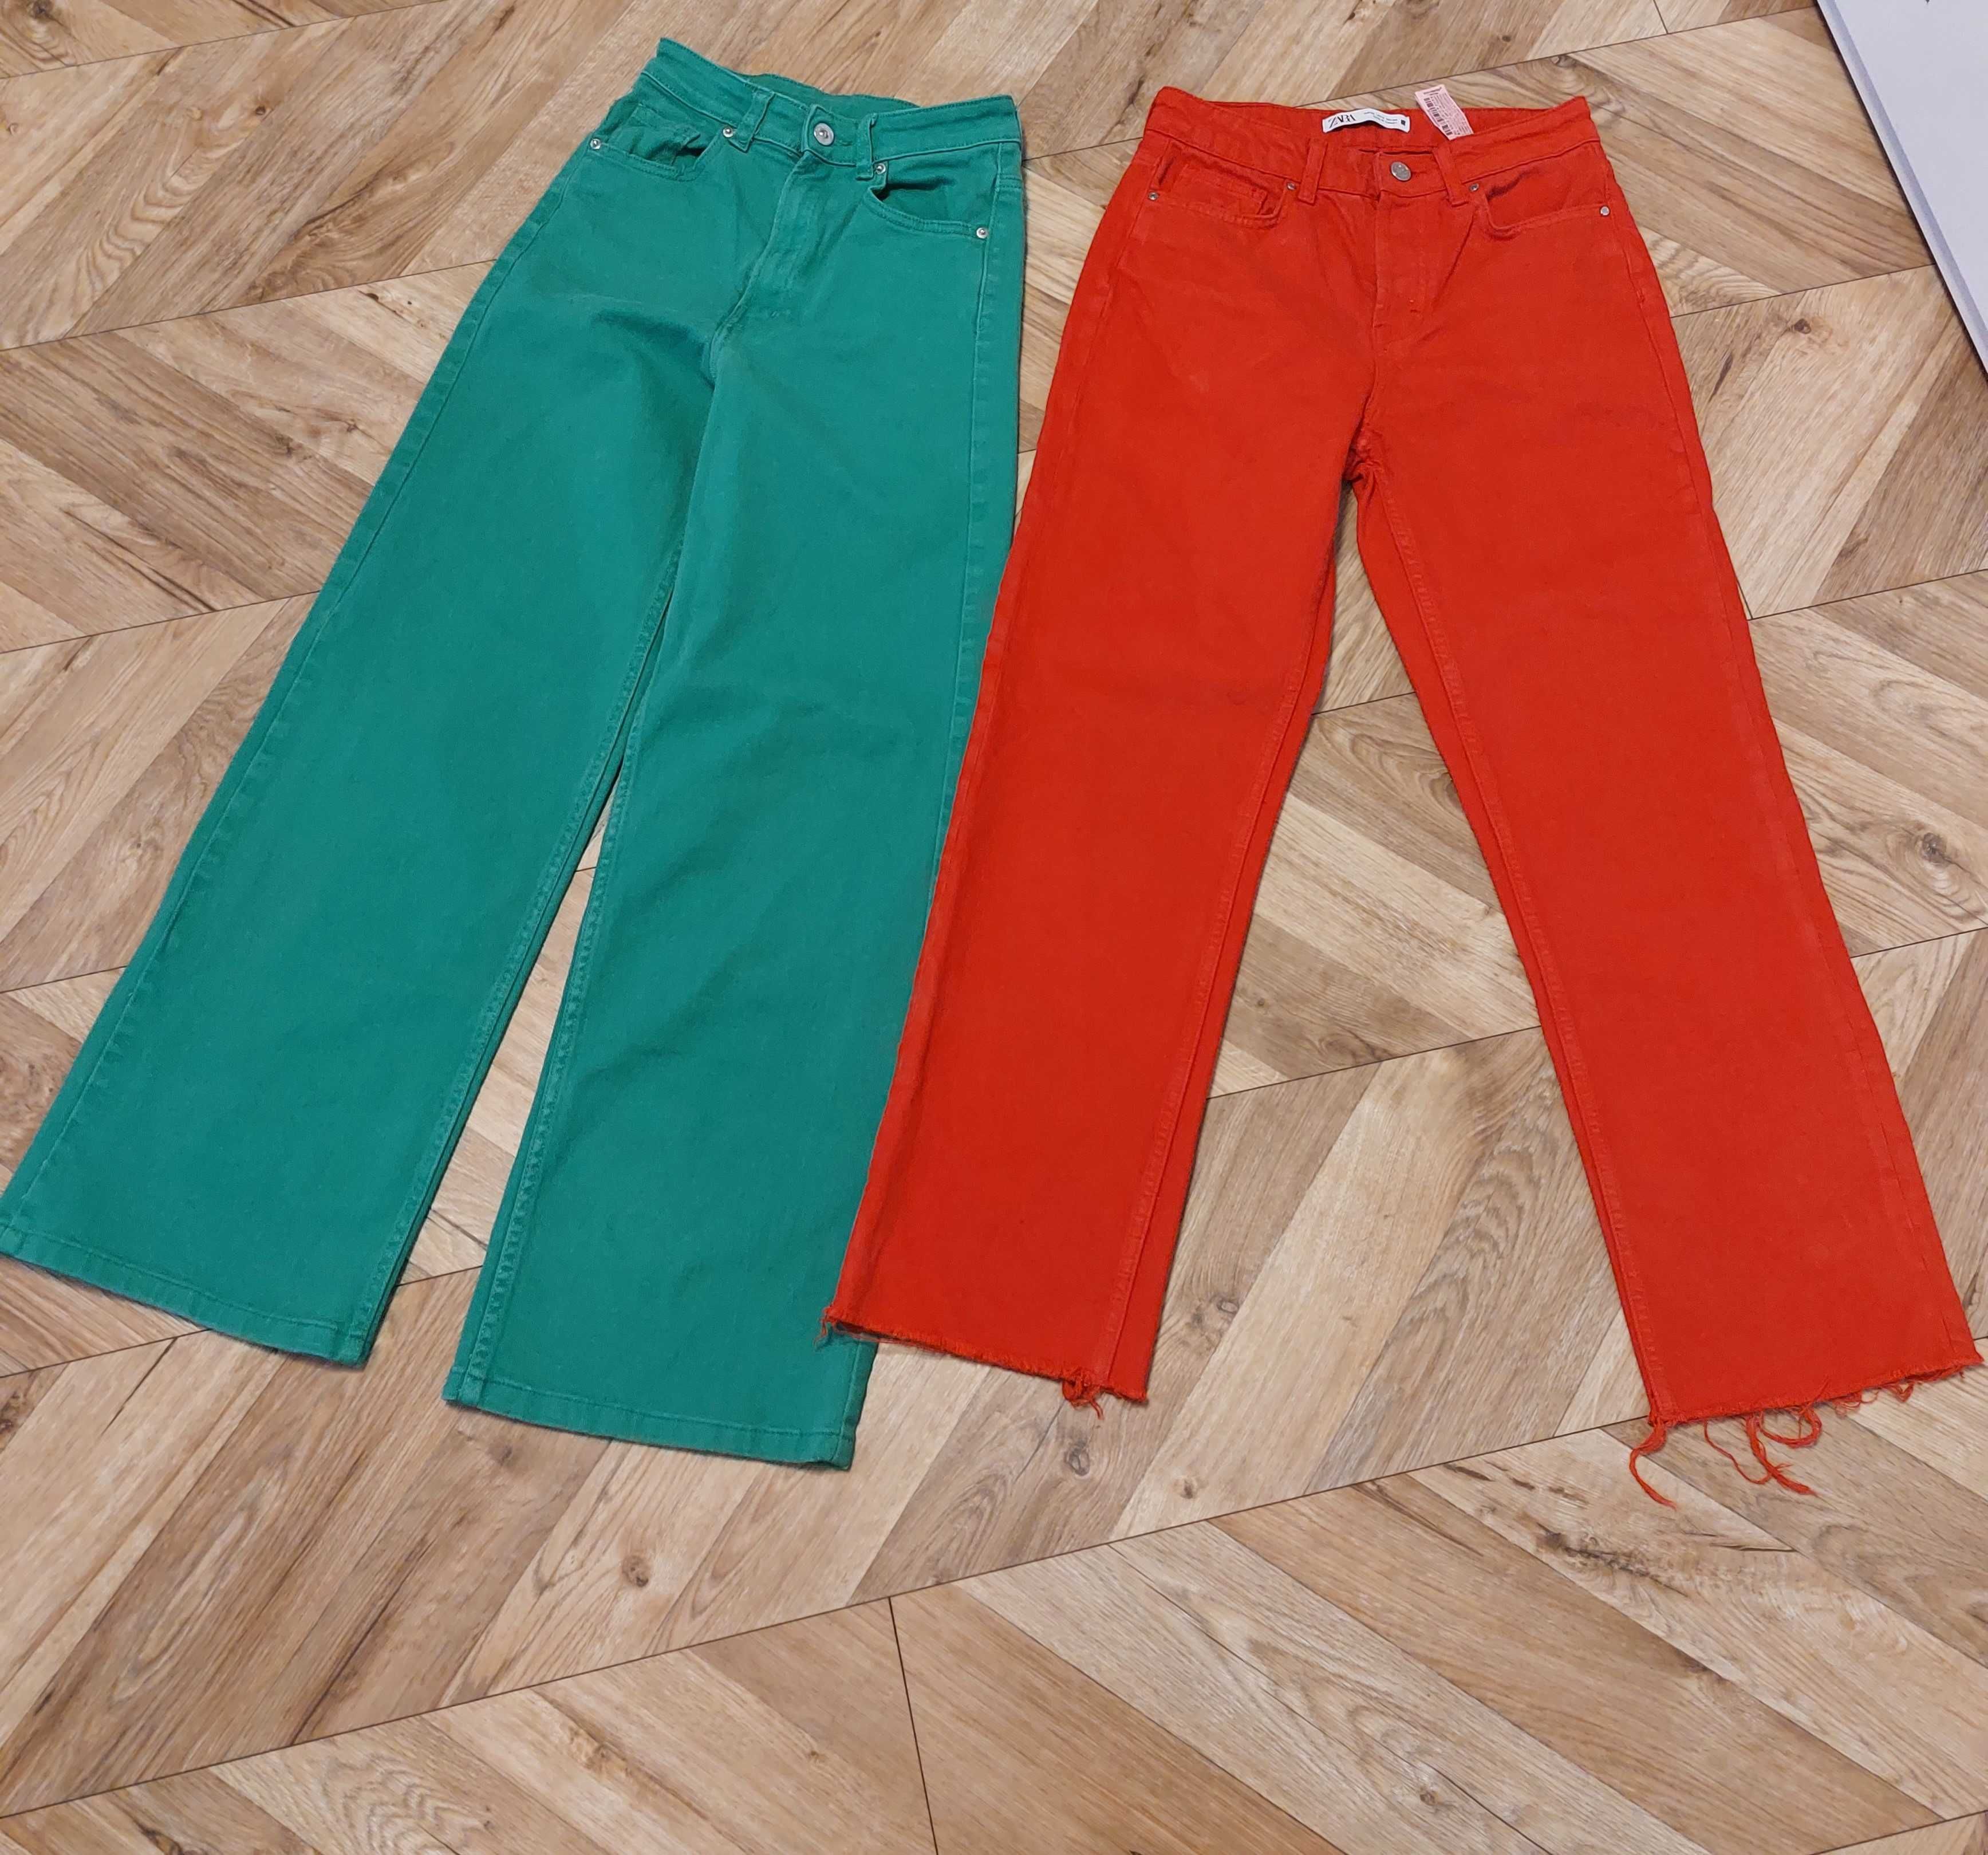 Dwie pary firmowych jeansów czerwone Zara i zielone H&M